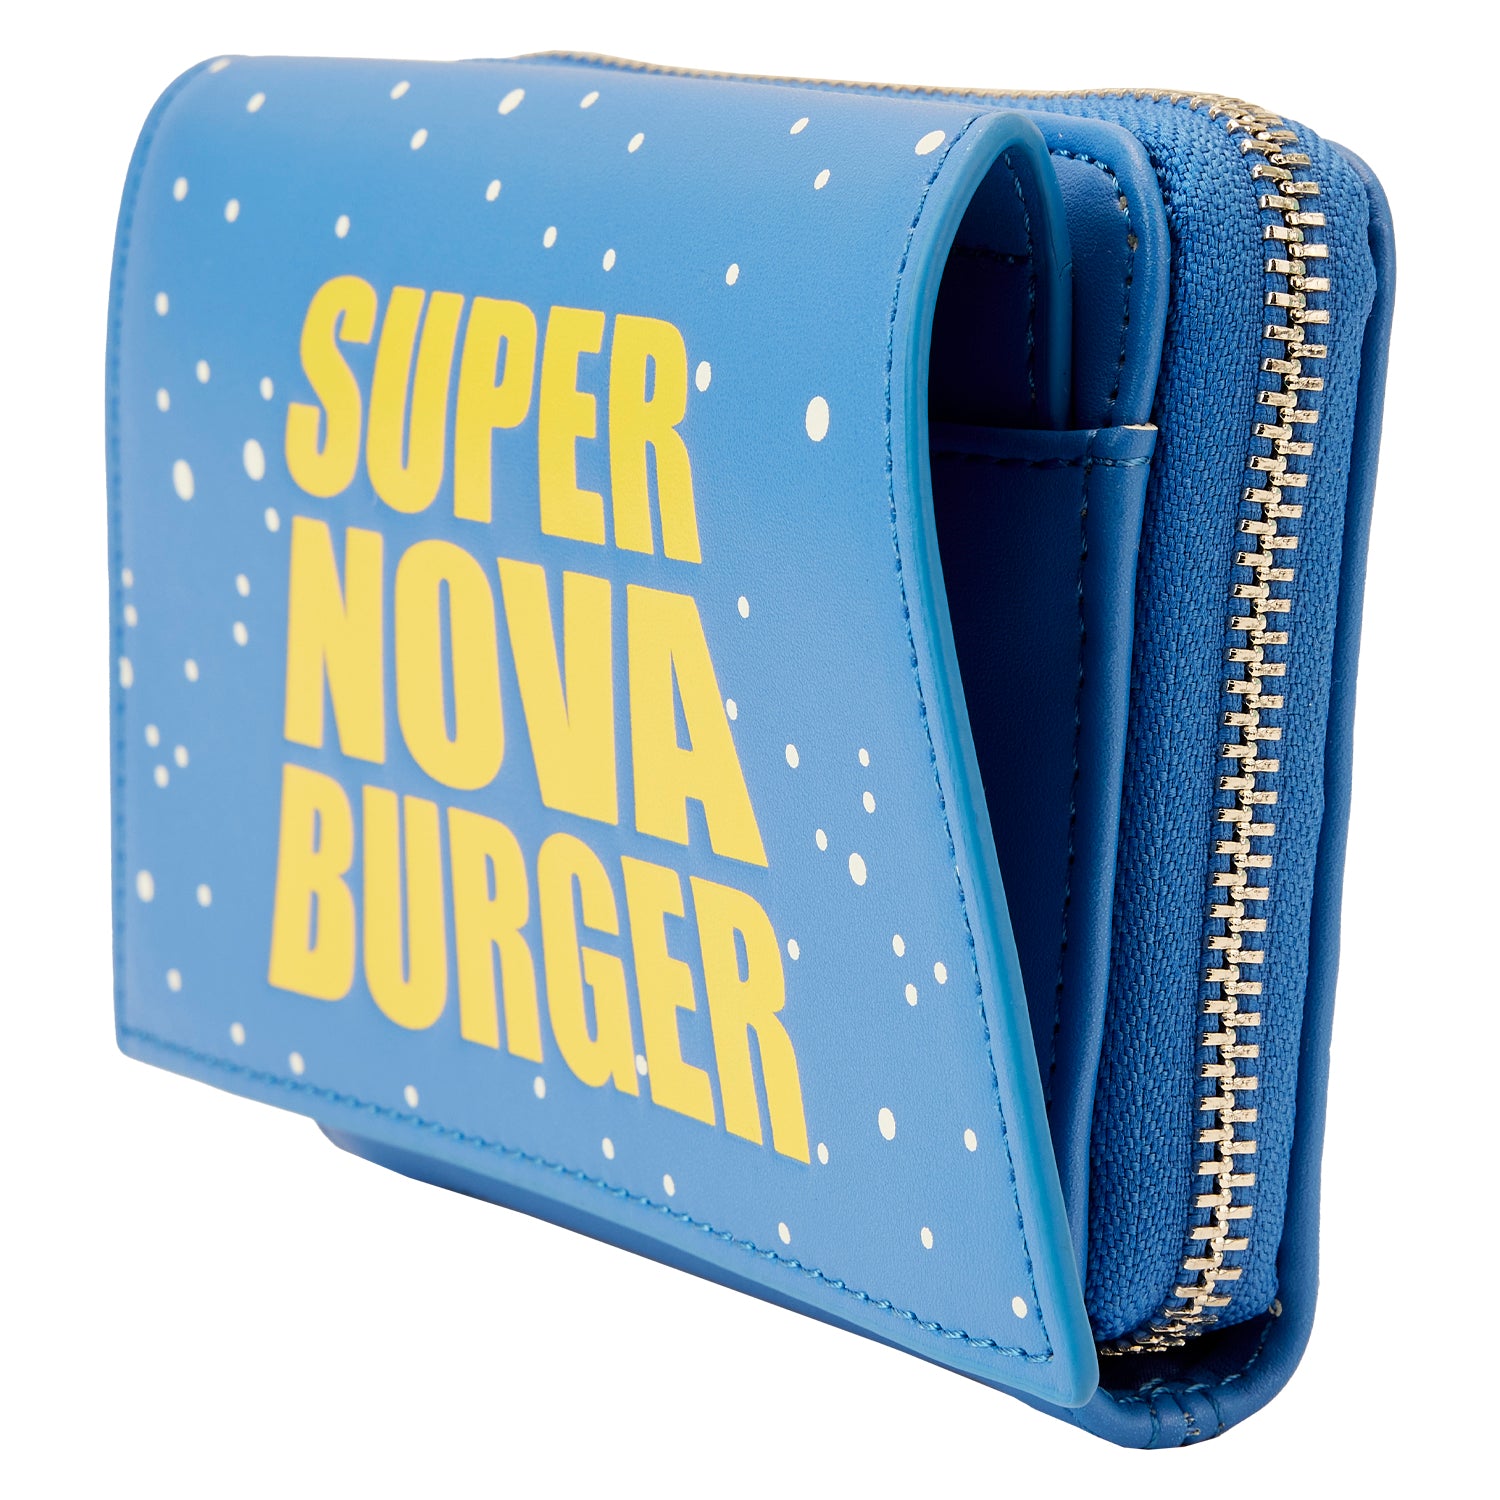 Pixar | Toy Story Pizza Planet Super Nova Burger Wallet